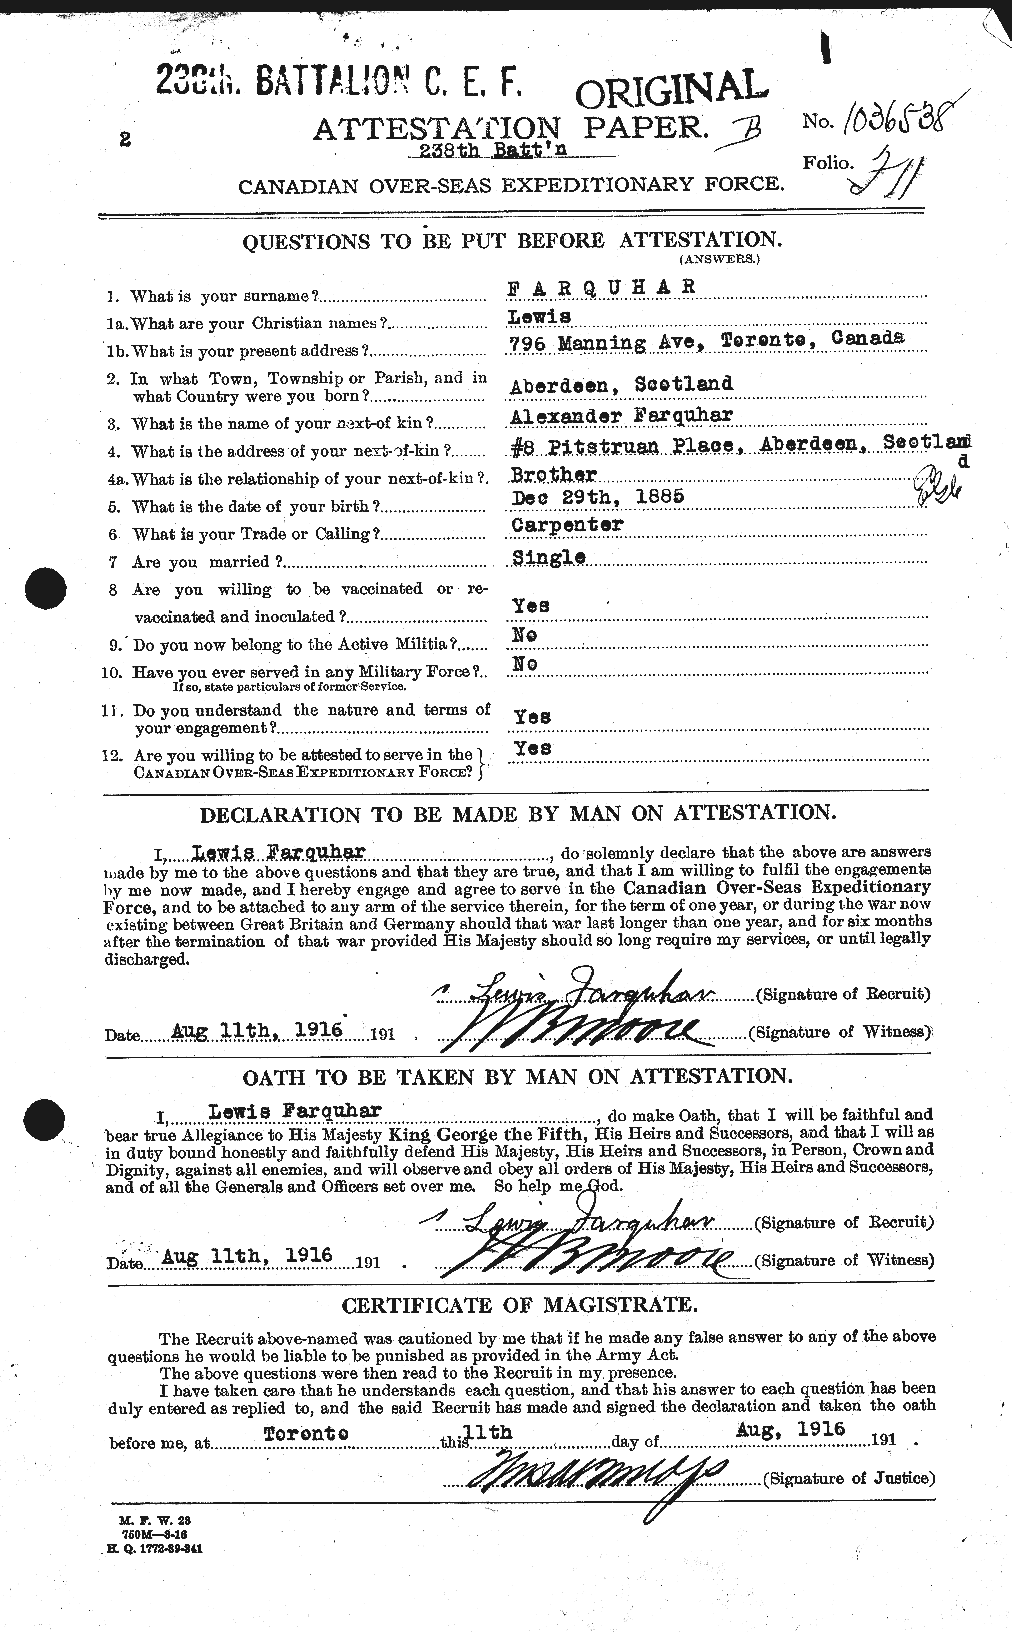 Dossiers du Personnel de la Première Guerre mondiale - CEC 318788a